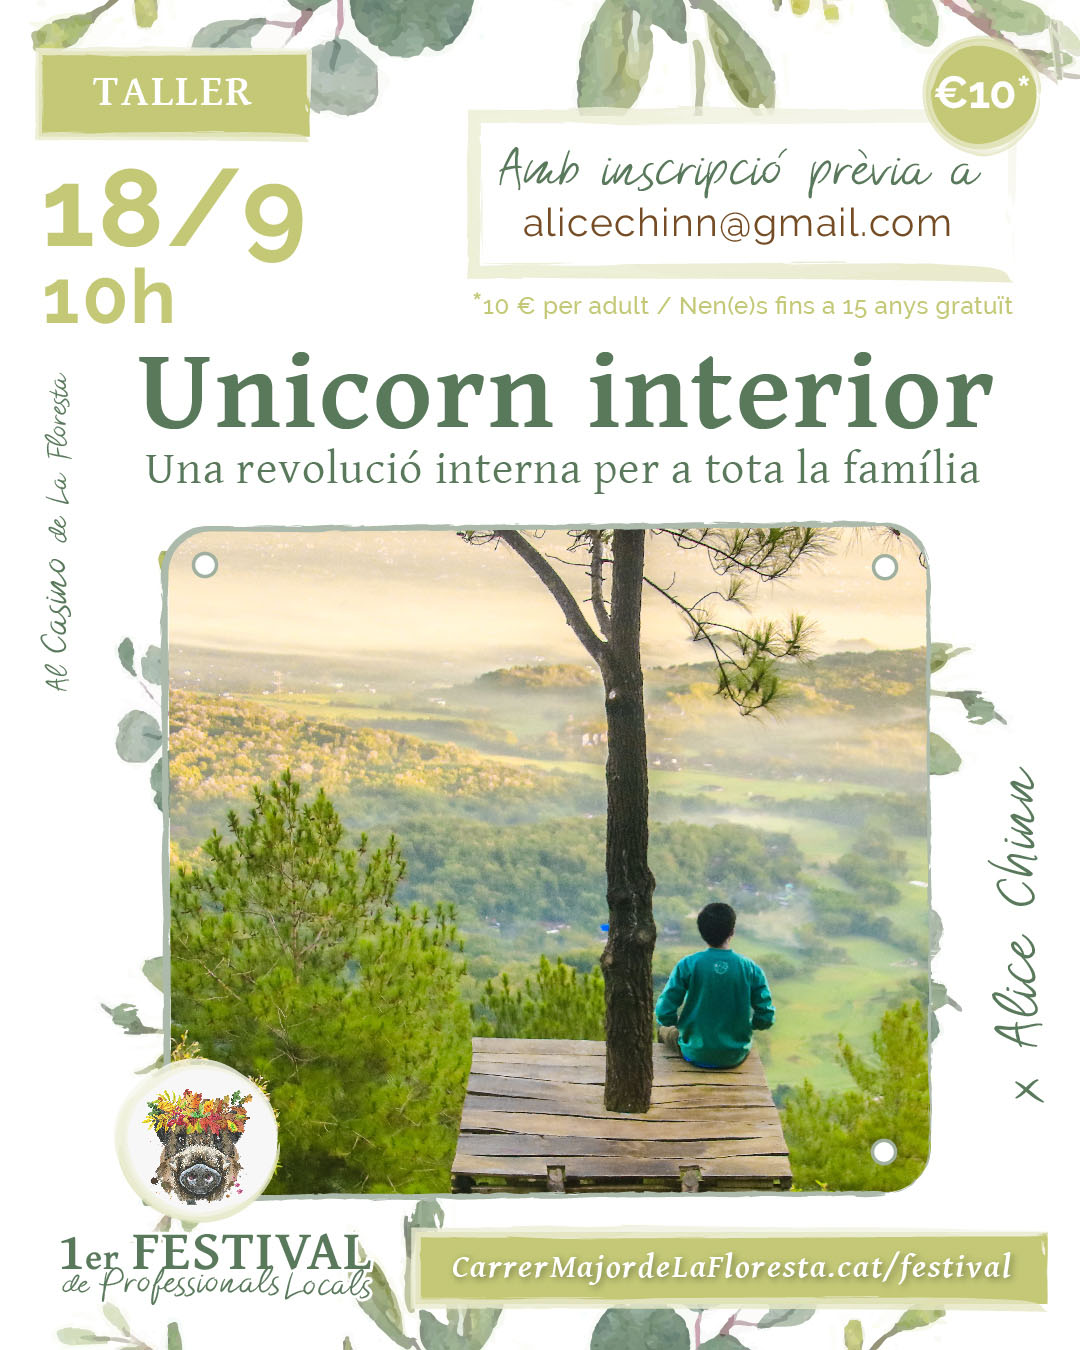 Taller Unicornio Interior - Una revolución interna para toda la familia